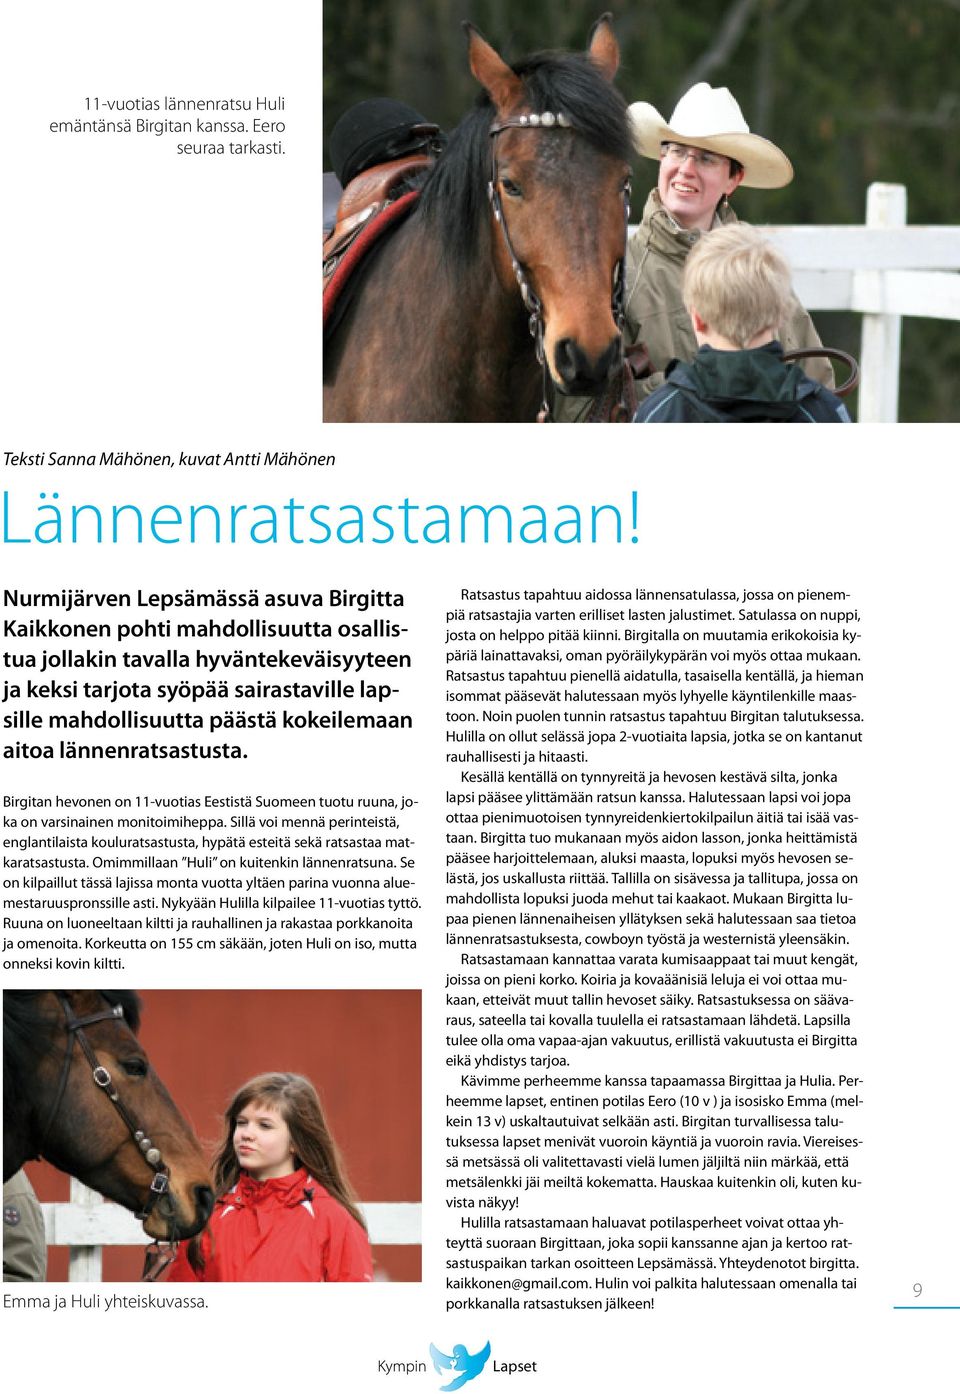 aitoa lännenratsastusta. Birgitan hevonen on 11-vuotias Eestistä Suomeen tuotu ruuna, joka on varsinainen monitoimiheppa.